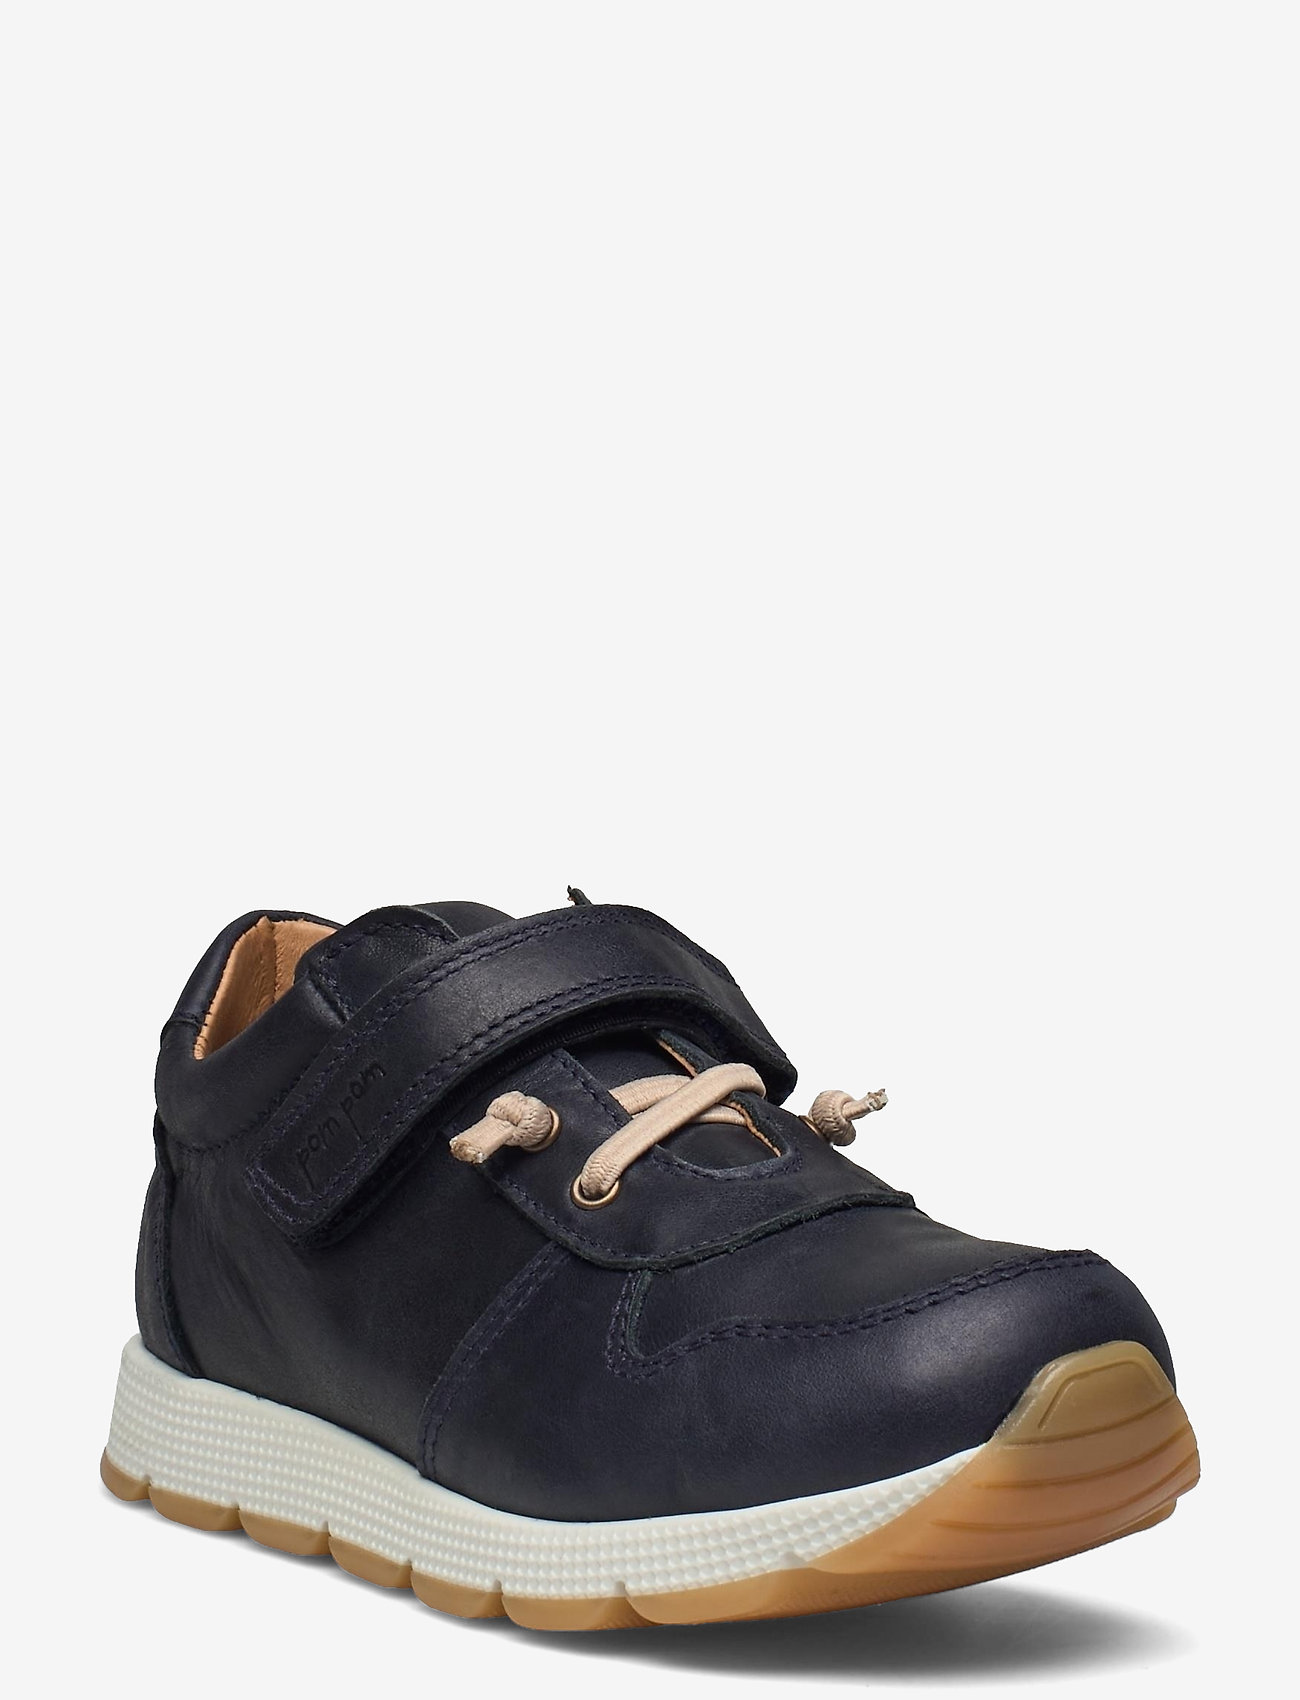 Pom Pom - Runner Sneaker - sommarfynd - navy - 0